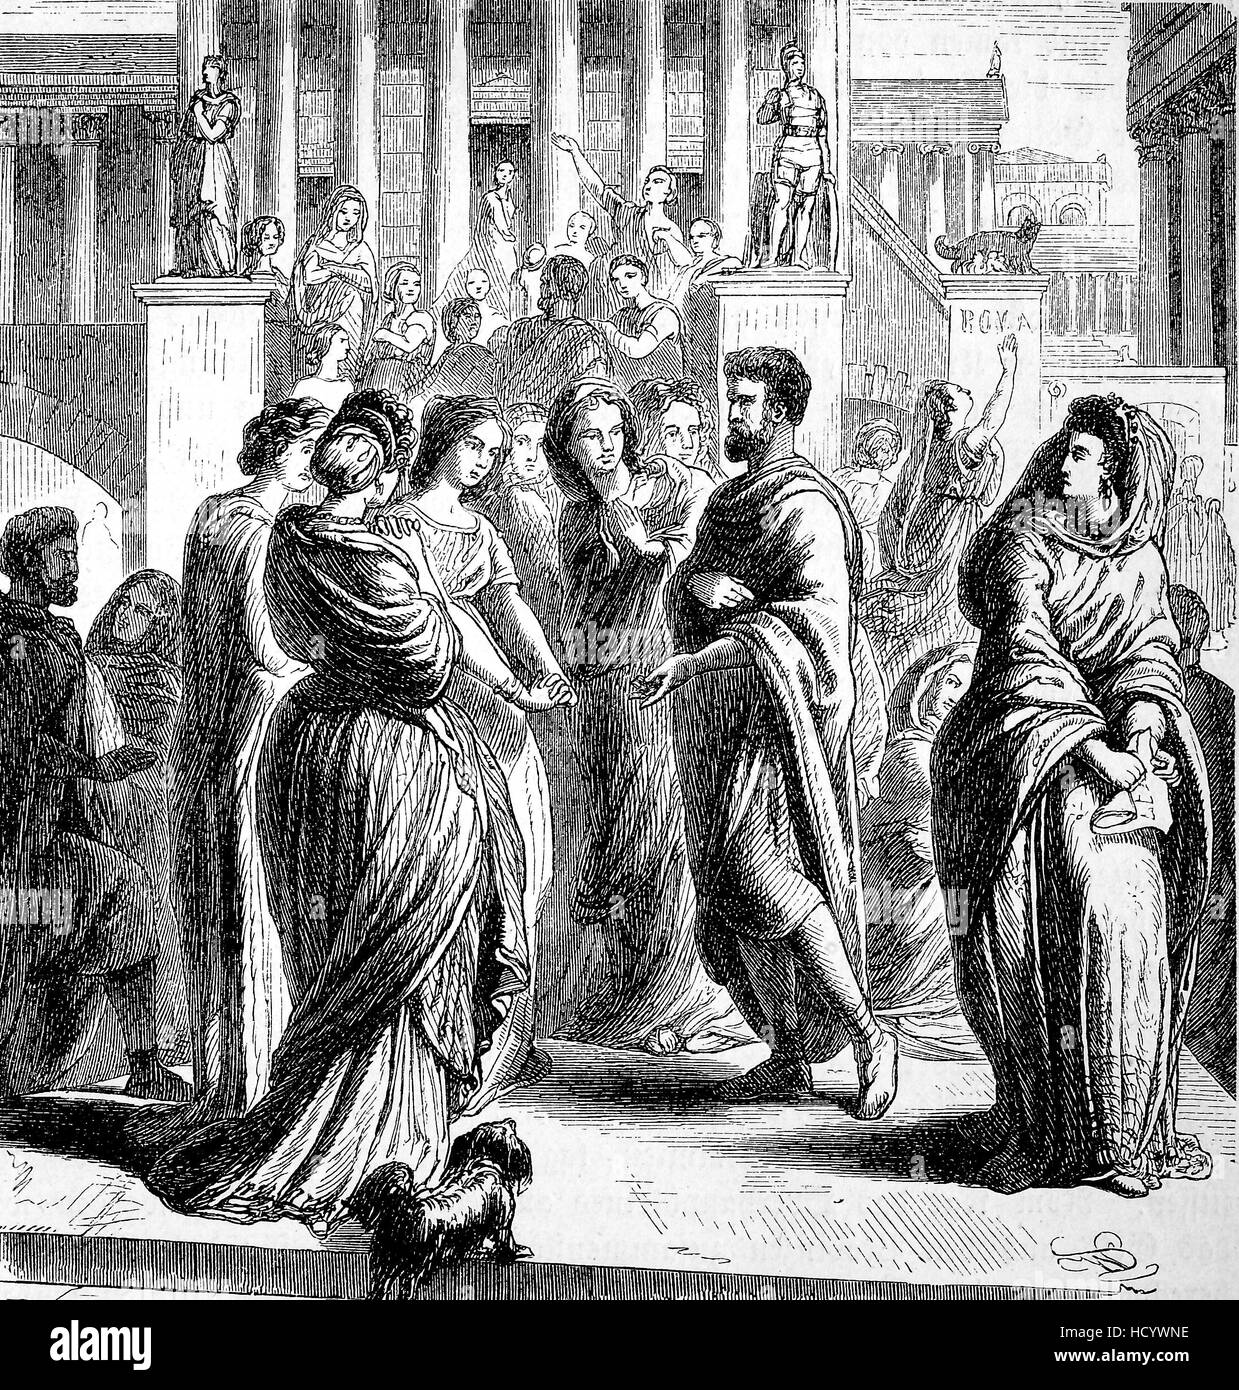 Consul Gaius Porcius Cato, 2.siècle avant J.-C., avec élégamment vêtue les romaines, l'histoire de la Rome antique, Empire romain, Italie Banque D'Images